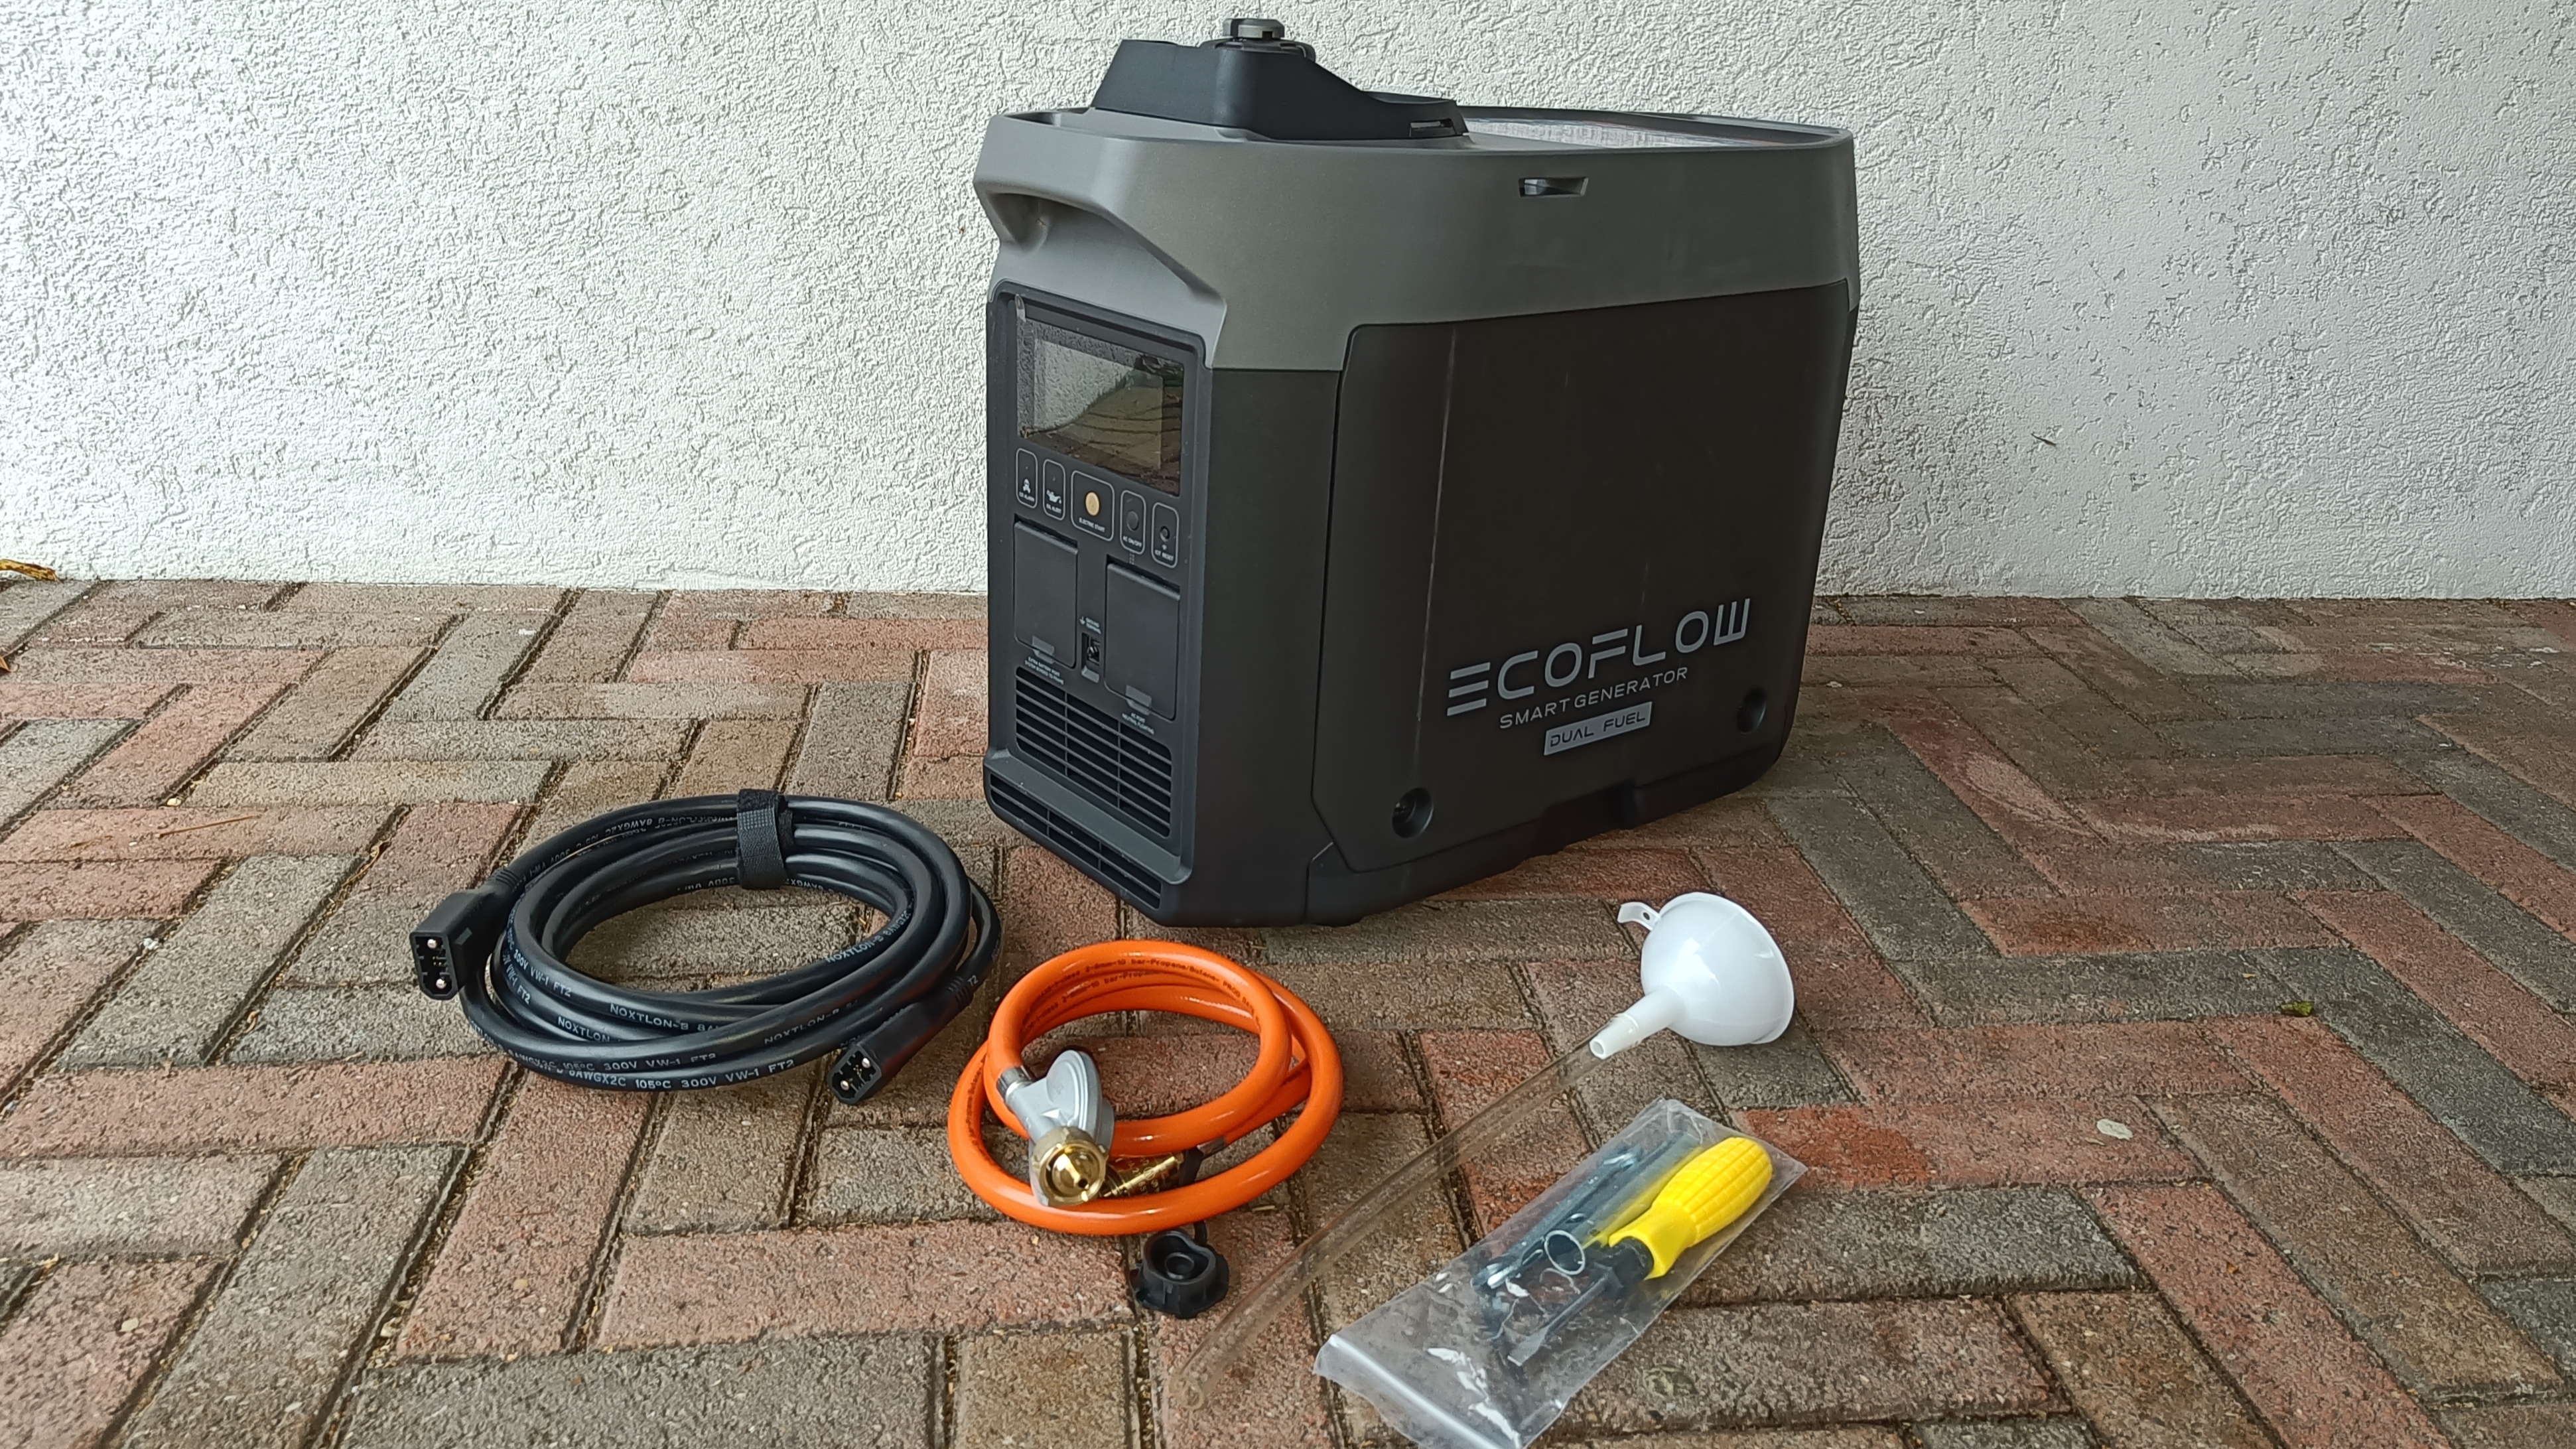 Notstromaggregat Ecoflow Smart Generator im Test: Benzin und Gas